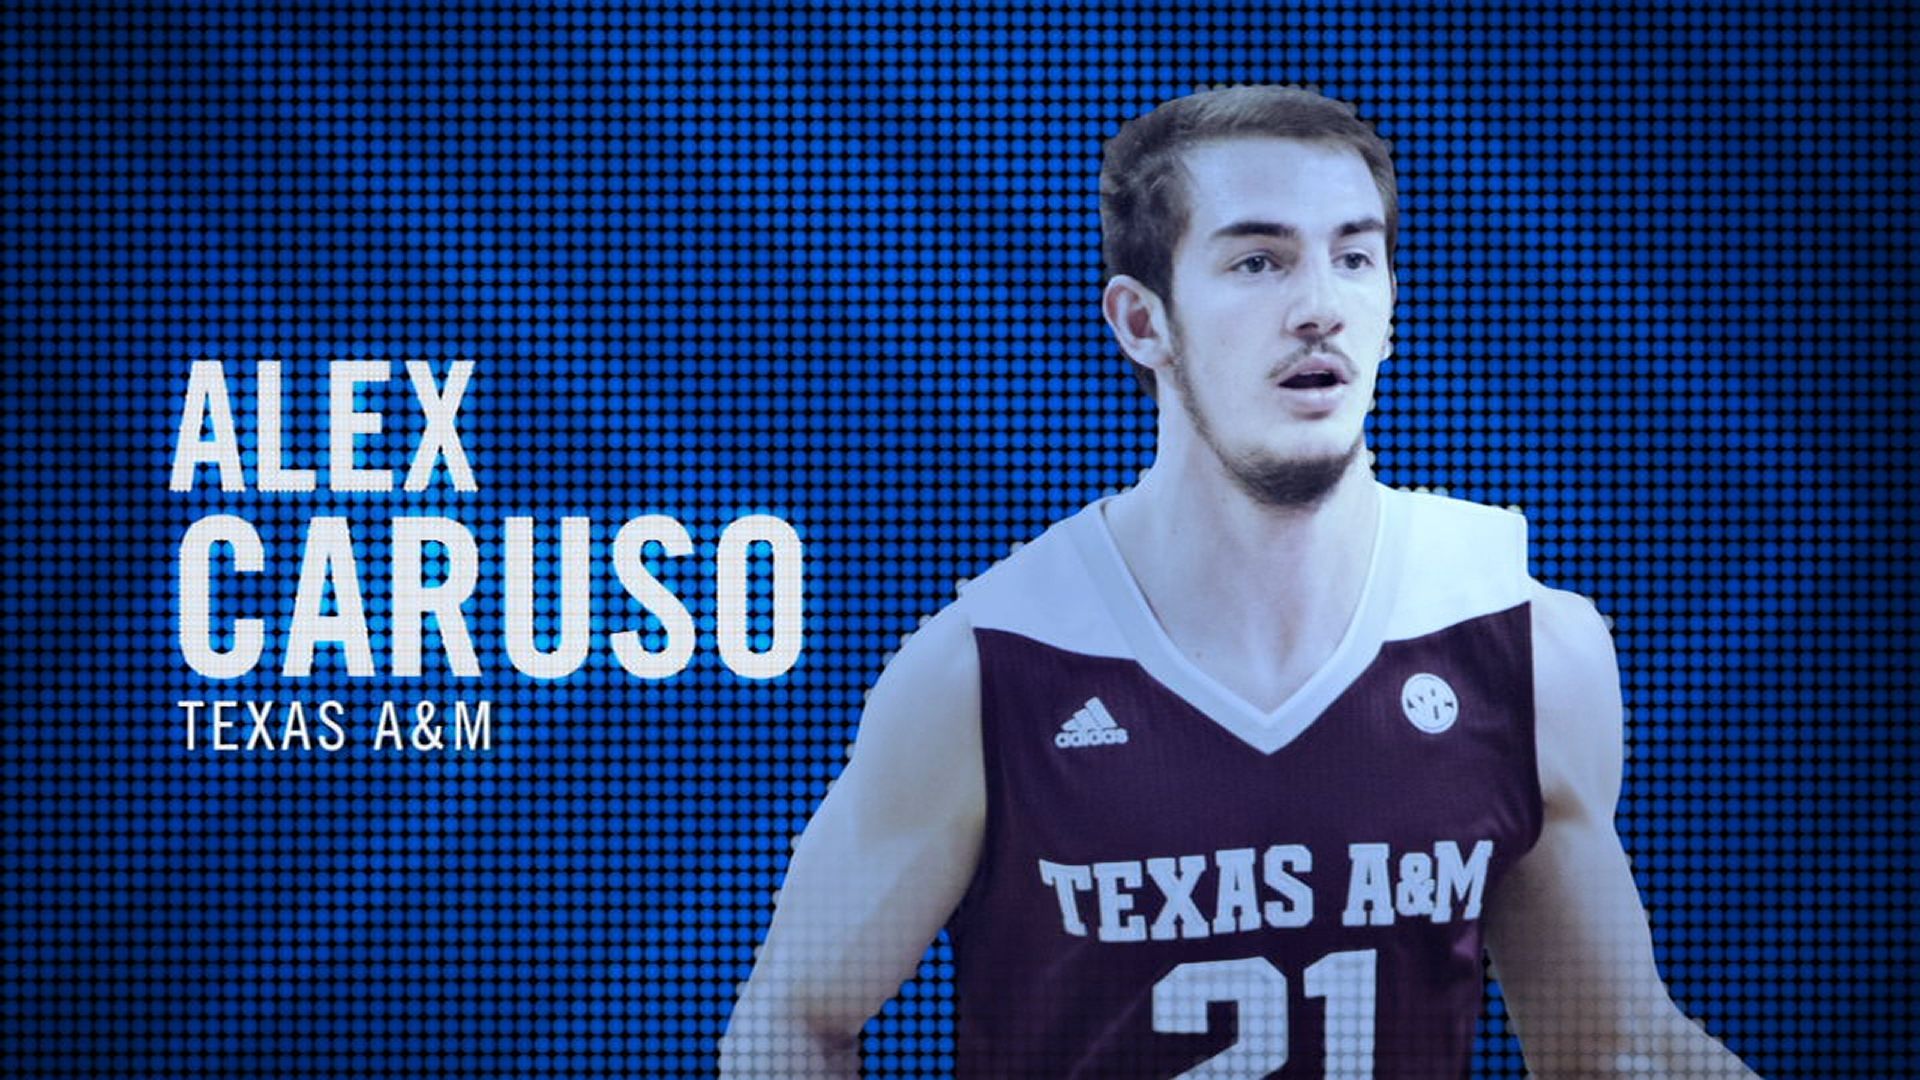 I am the SEC: Texas A&M's Alex Caruso